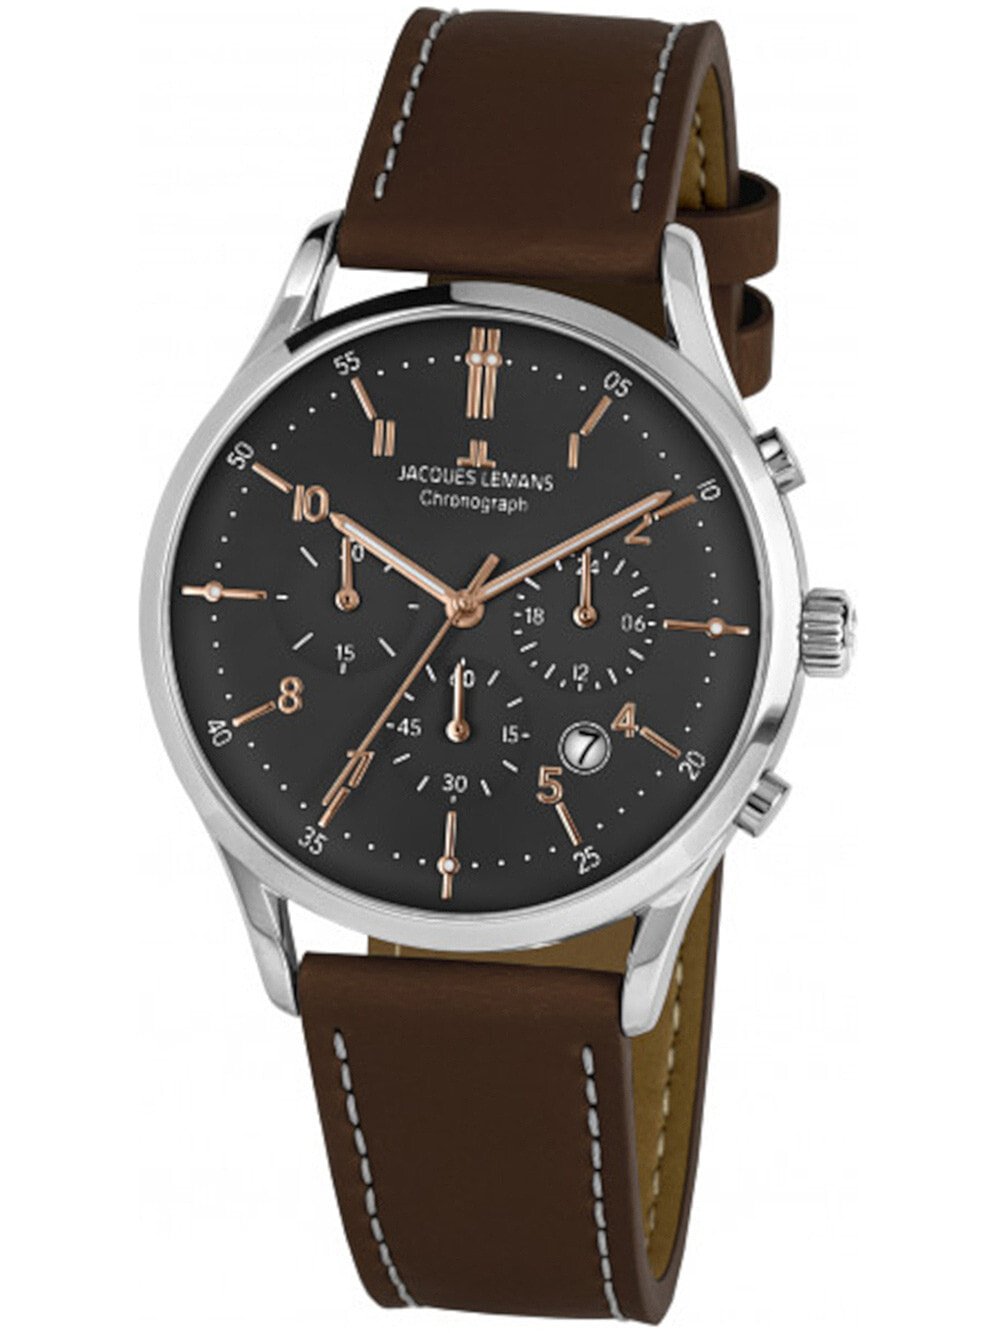 Мужские наручные часы с коричневым кожаным ремешком   Jacques Lemans 1-2068O Retro Classic chrono mens 41mm 5ATM